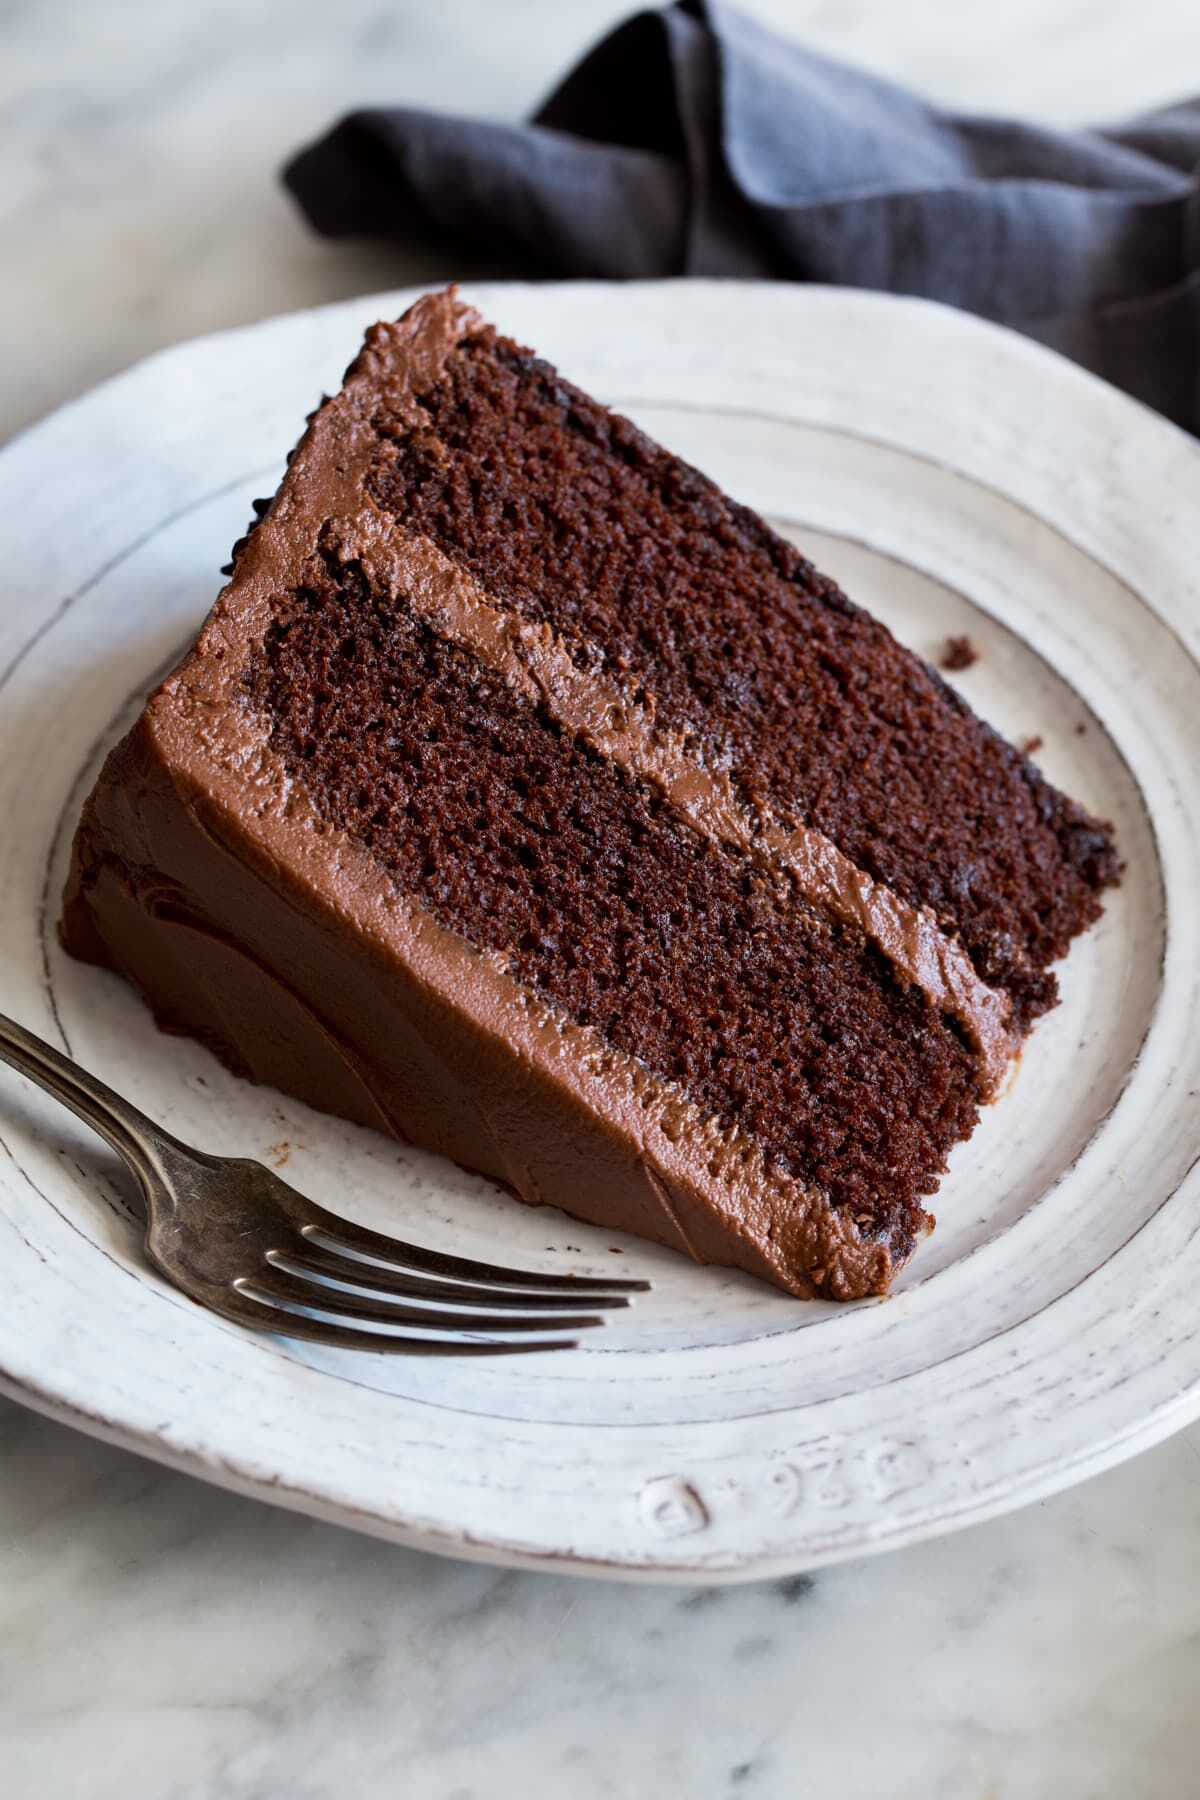 Napoleon cake - Wikidata